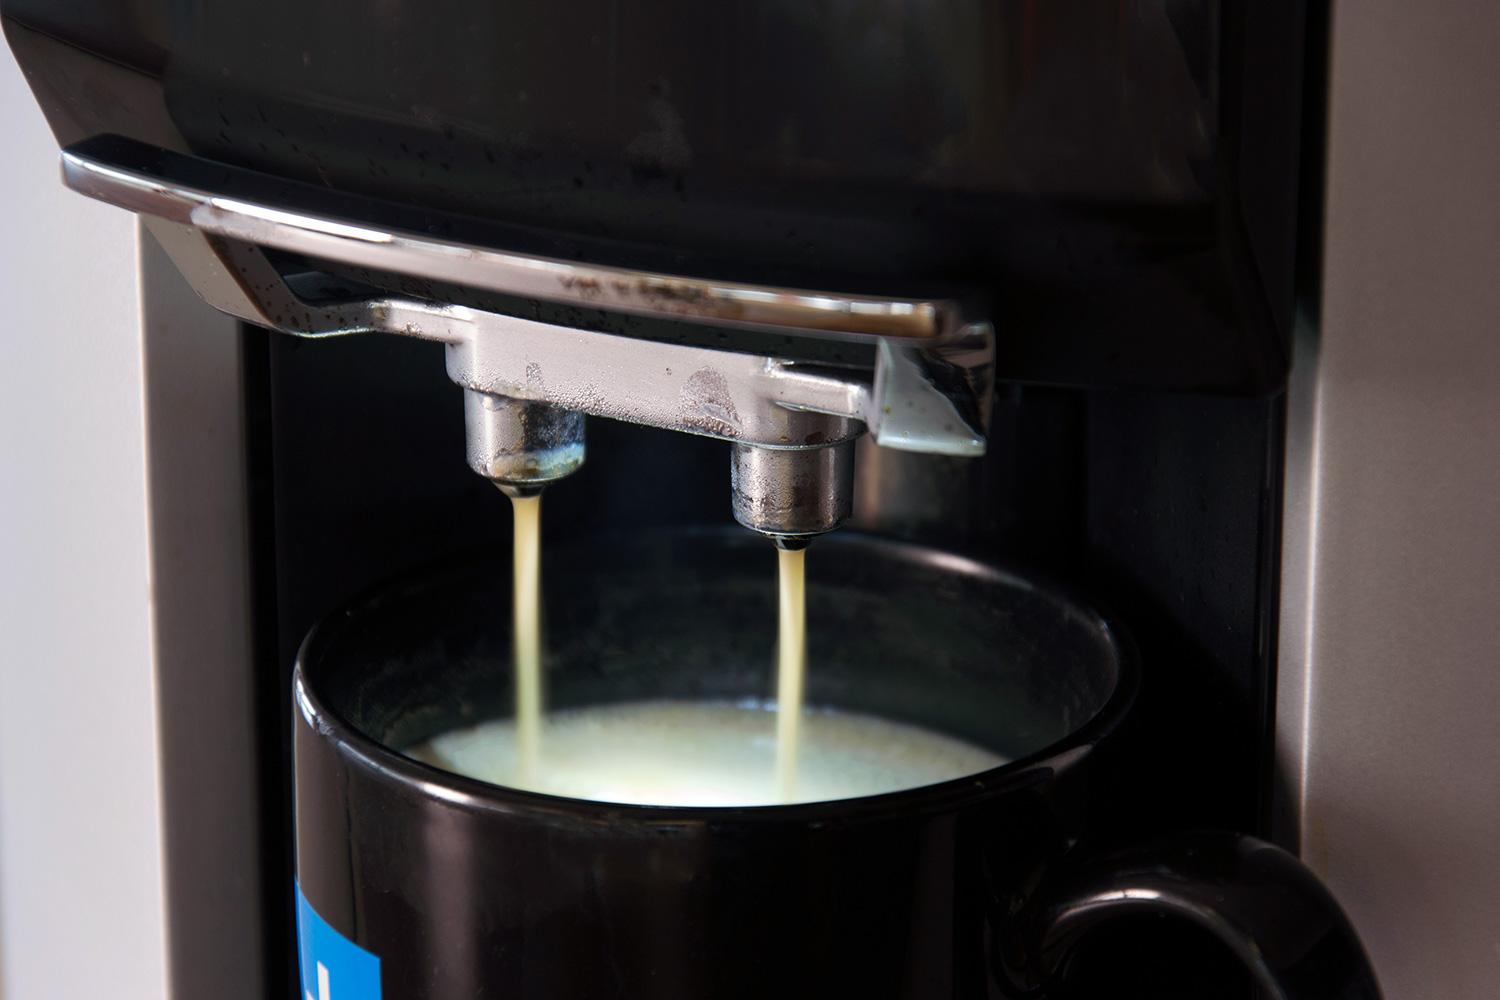 https://www.digitaltrends.com/wp-content/uploads/2015/06/Krups-EA9010-Coffee-Maker-pour2.jpg?fit=1500%2C1000&p=1